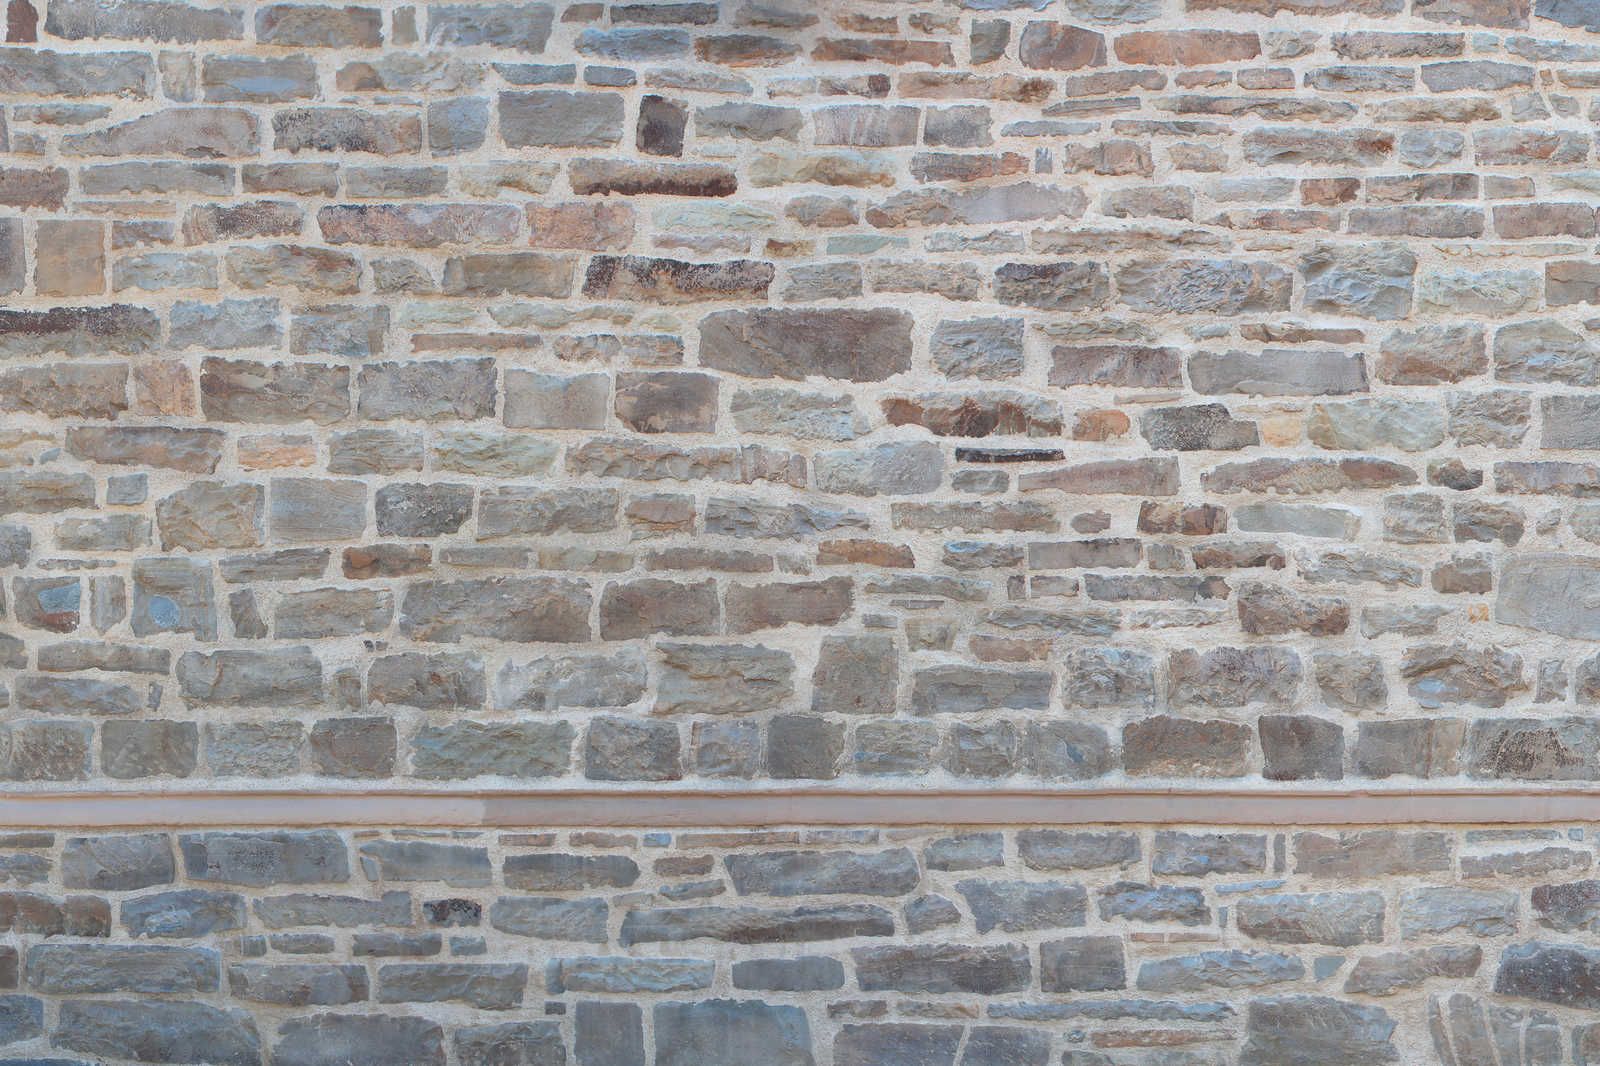             Leinwandbild Mauerwerk Hellgrau mit Naturstein Design – 1,20 m x 0,80 m
        